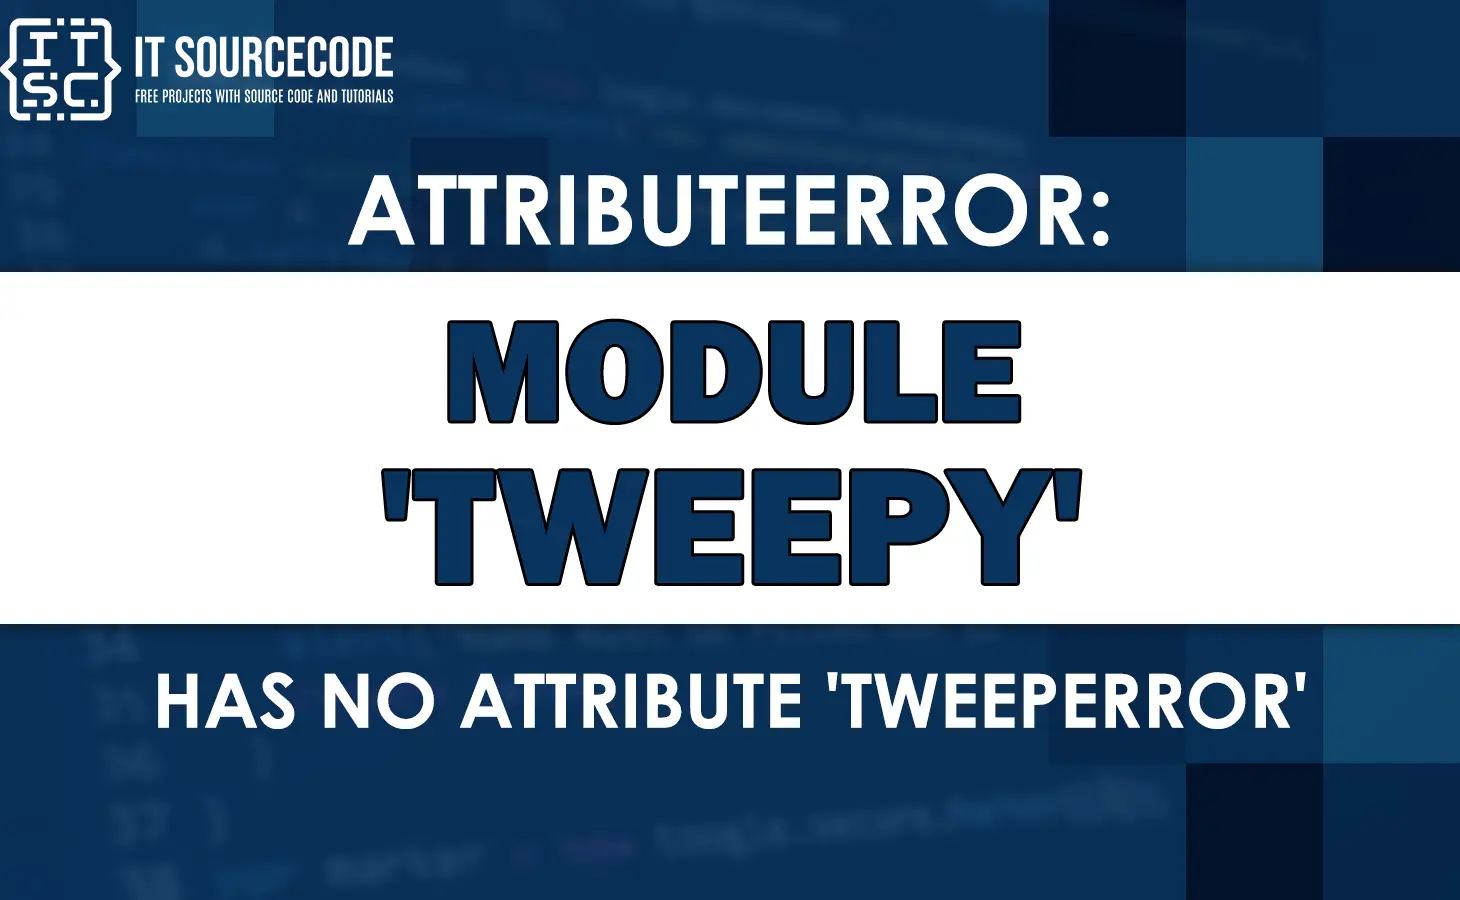 Attributeerror: module tweepy has no attribute tweeperror